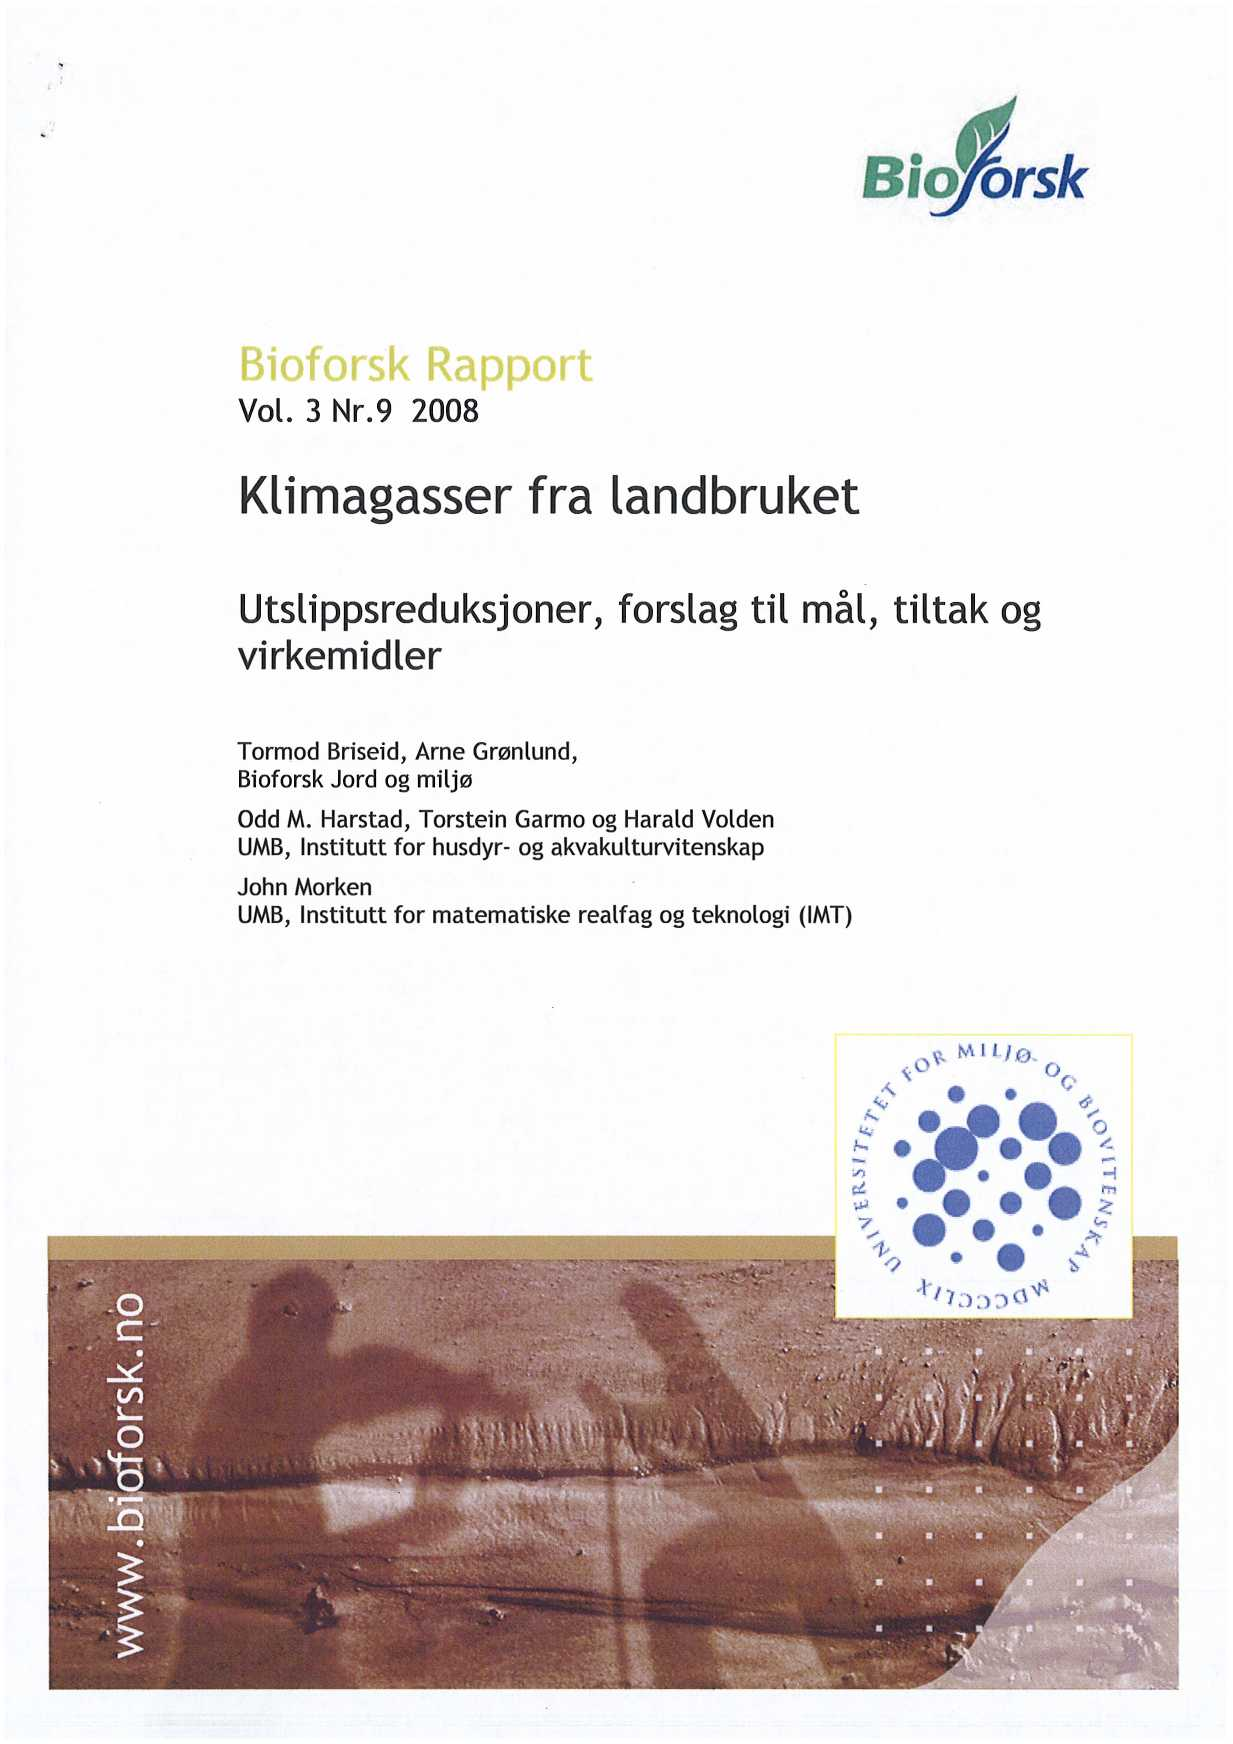 Vol. 3 Nr.9 2008 Klimagasser fra landbruket Utslippsreduksjoner, forslag til mål, tiltak og virkemidler Tormod Briseid, Arne Grønlund, Bioforsk Jord og miljø odd M.